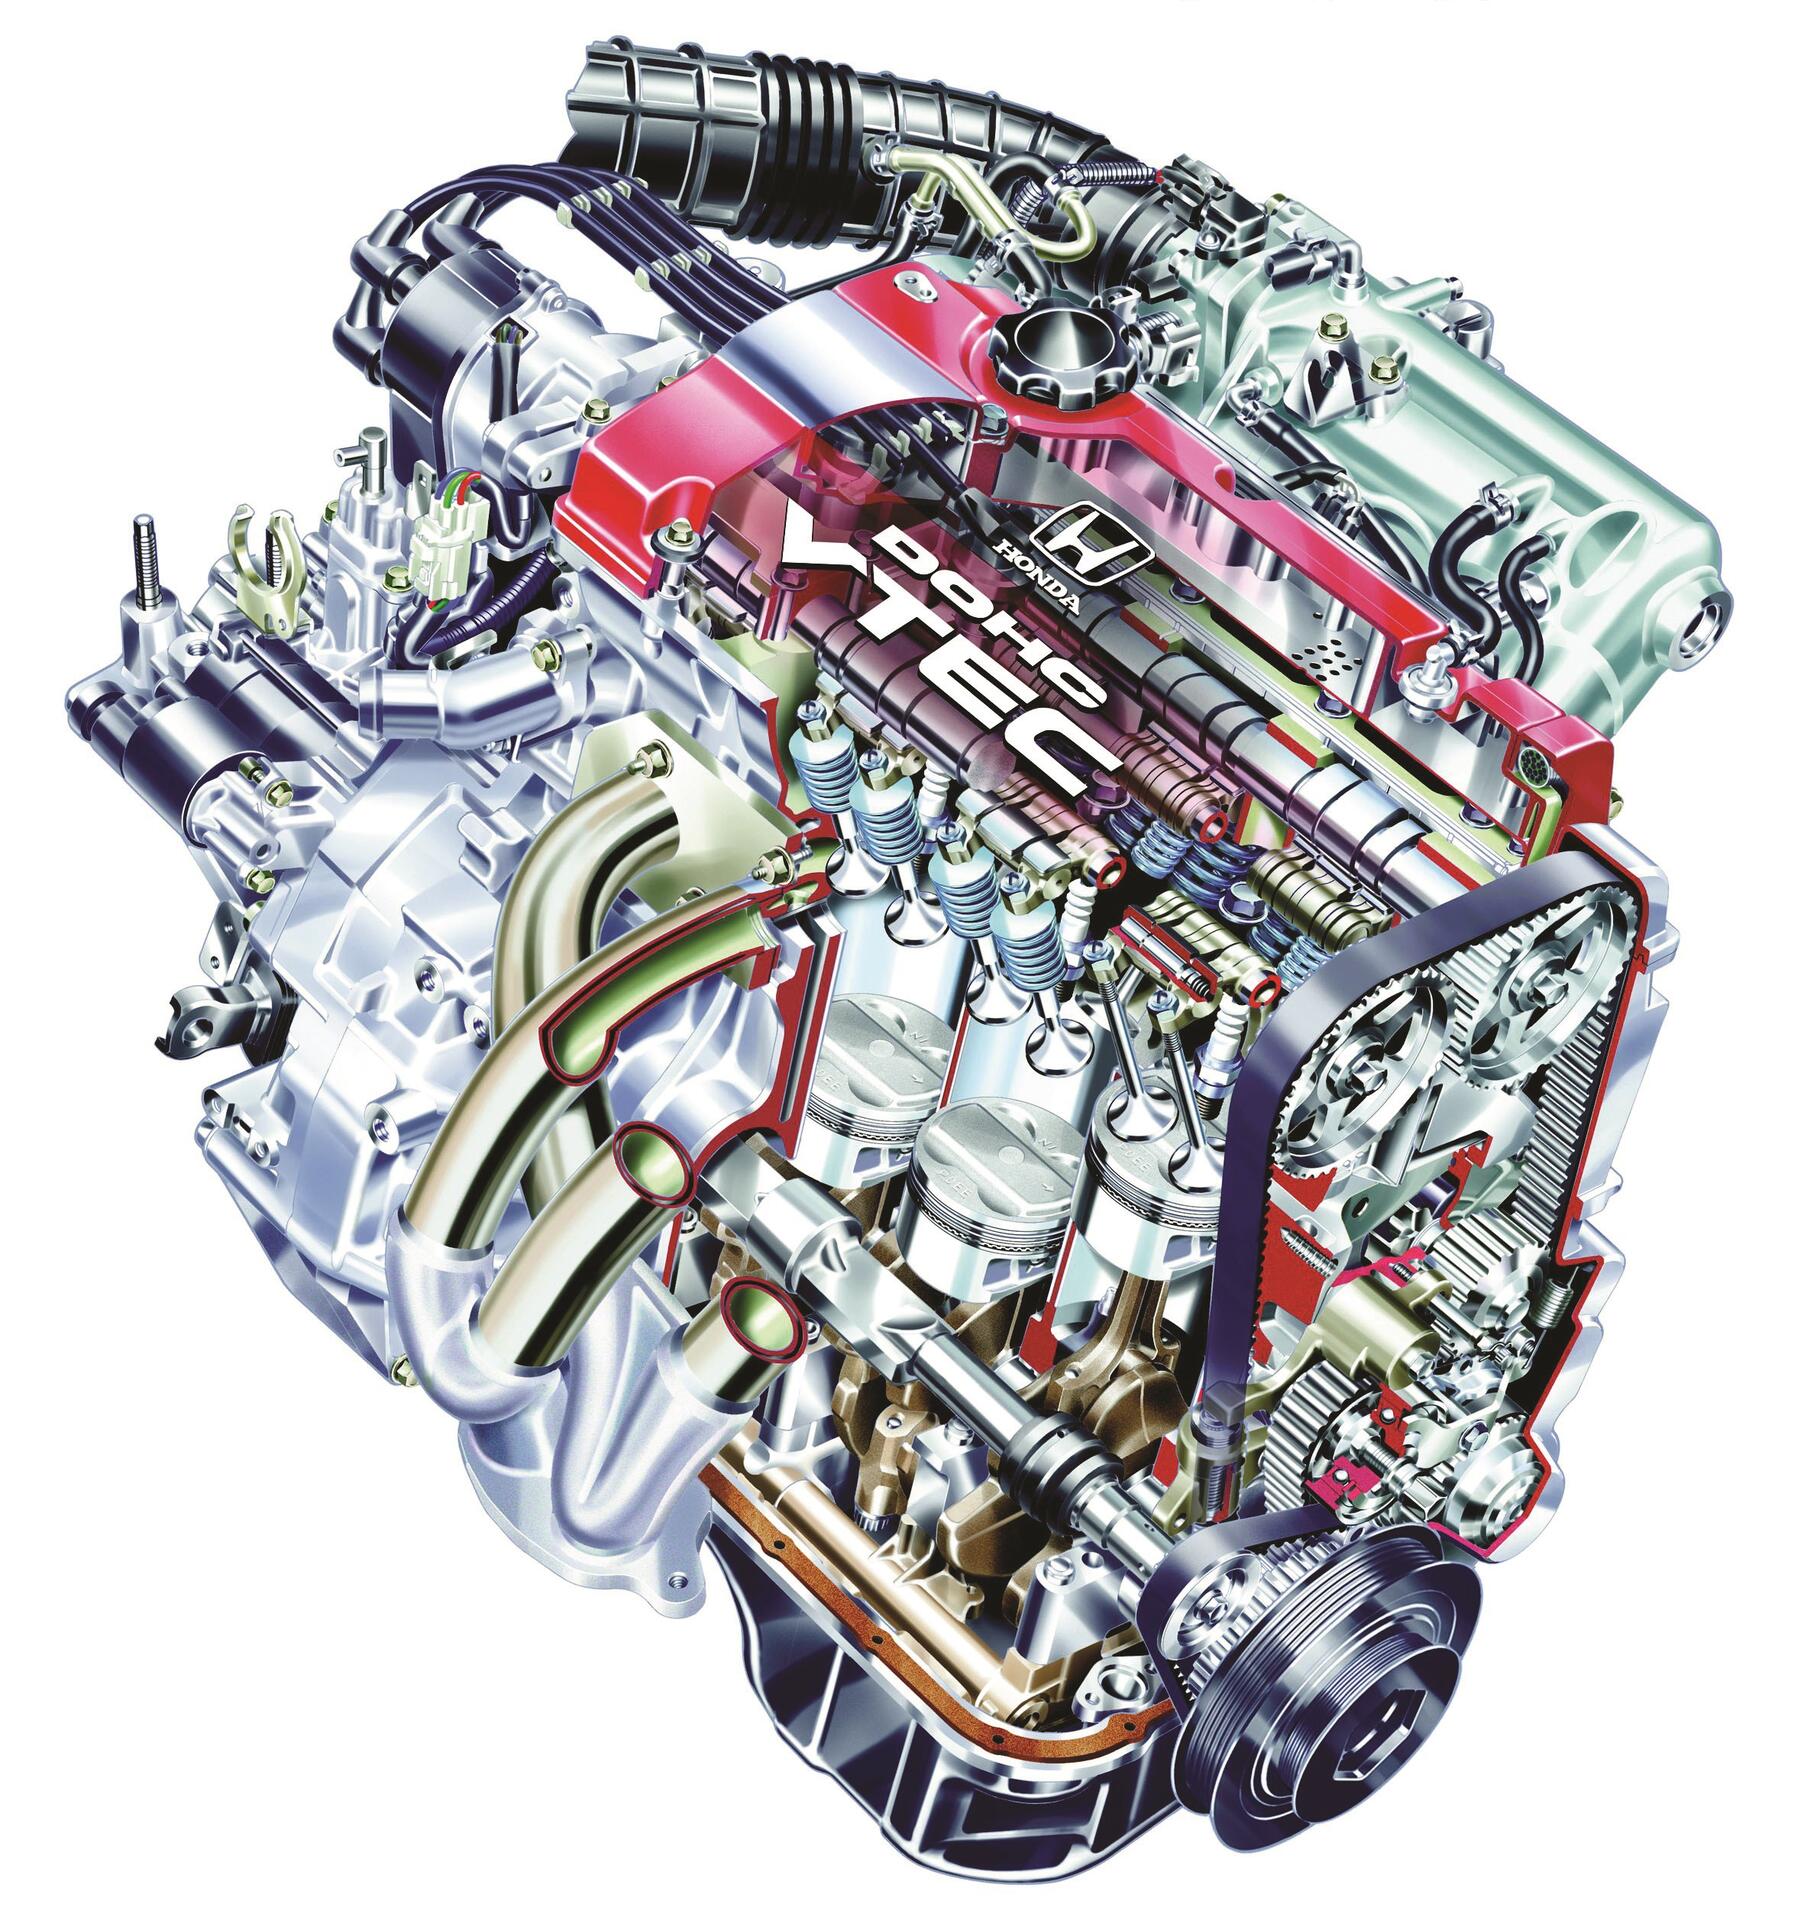 Honda VTEC DOHC